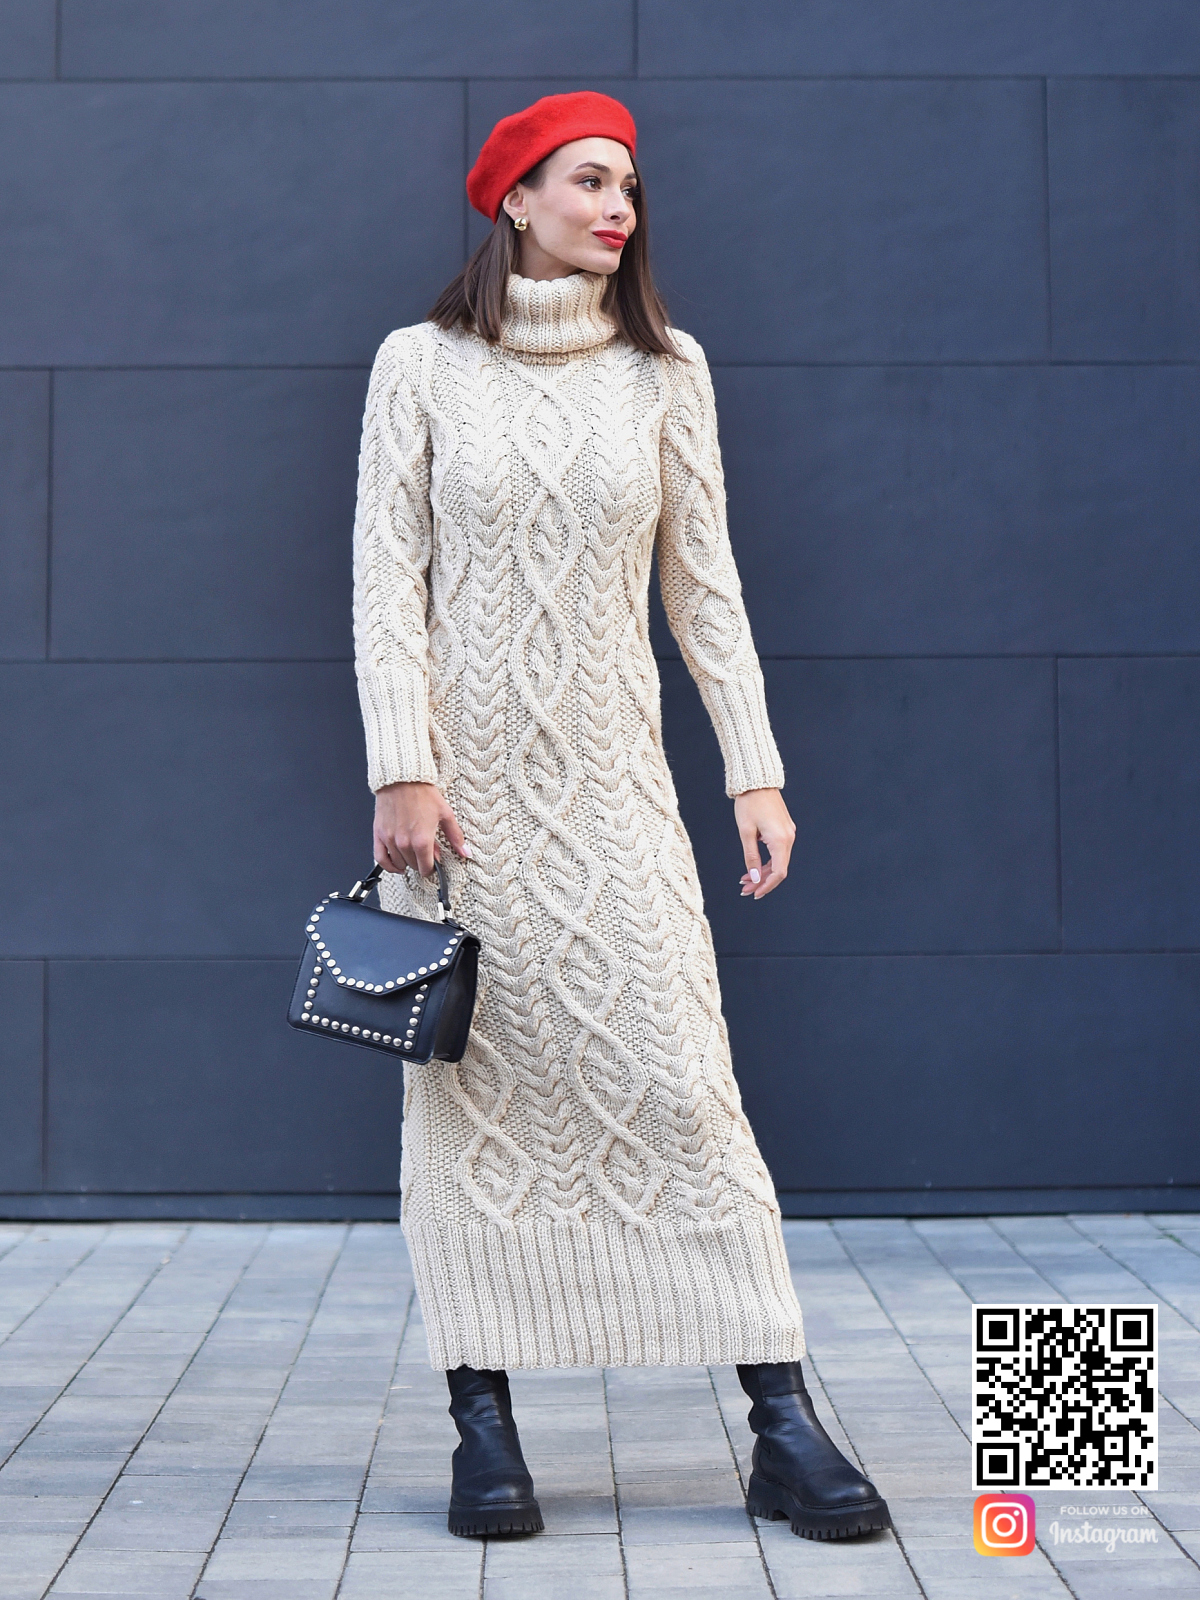 На фотографии теплое вязаное платье в интернет-магазине одежды ручной работы Shapar.